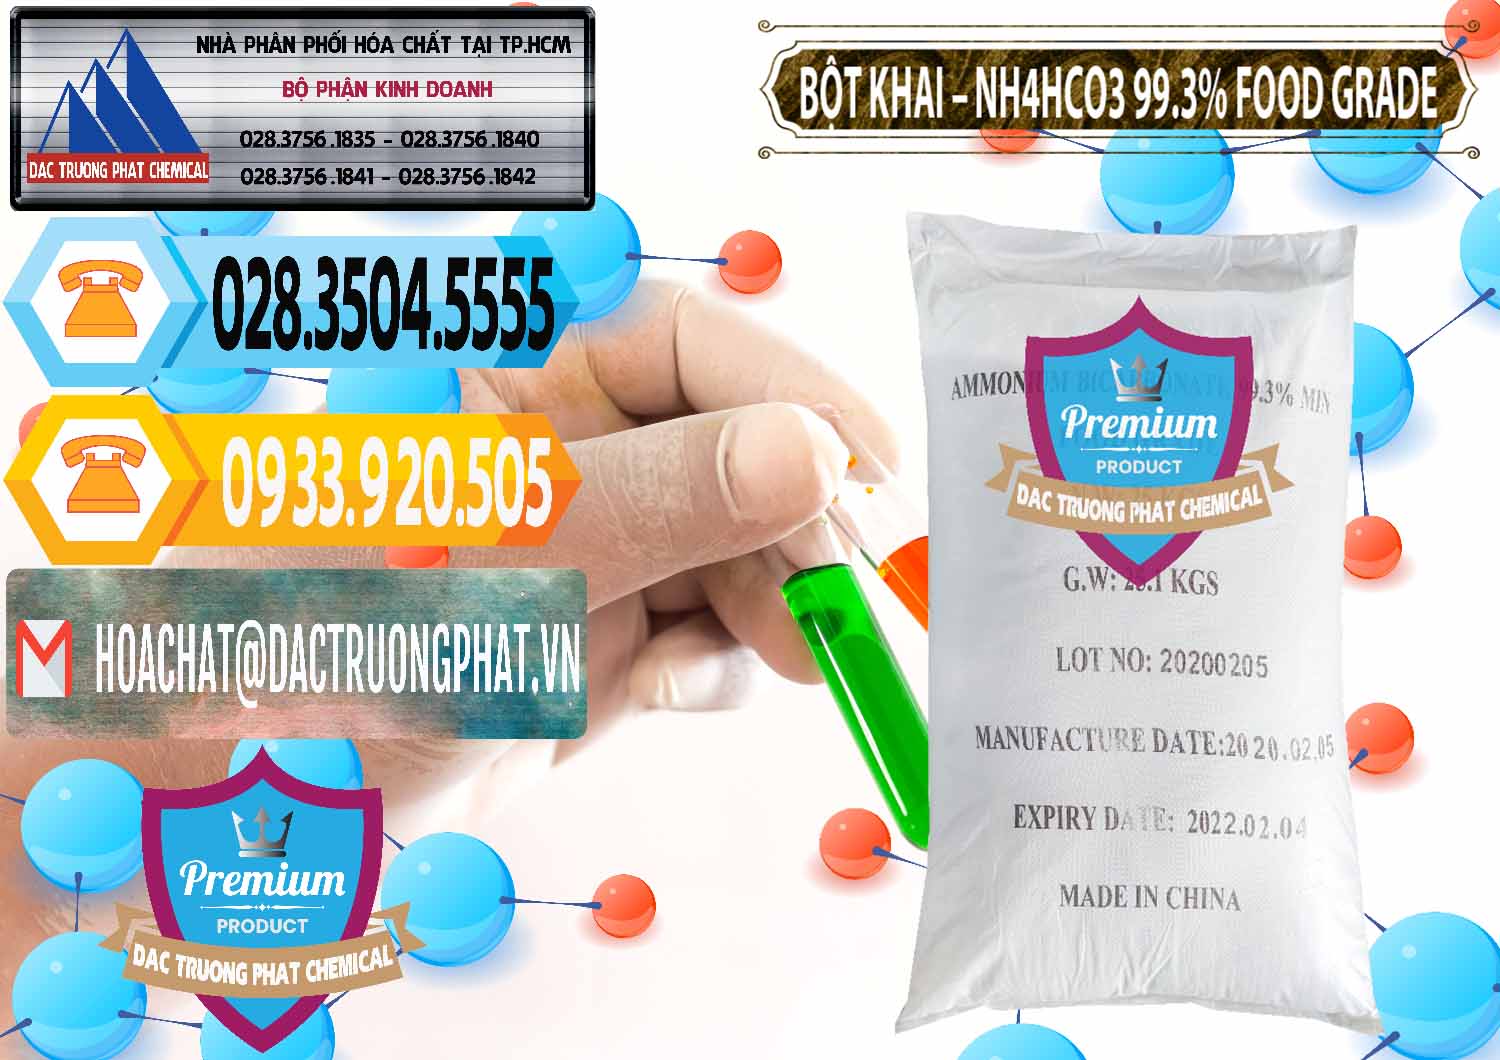 Bán - cung cấp Ammonium Bicarbonate – Bột Khai NH4HCO3 Food Grade Trung Quốc China - 0019 - Đơn vị cung cấp ( nhập khẩu ) hóa chất tại TP.HCM - hoachattayrua.net